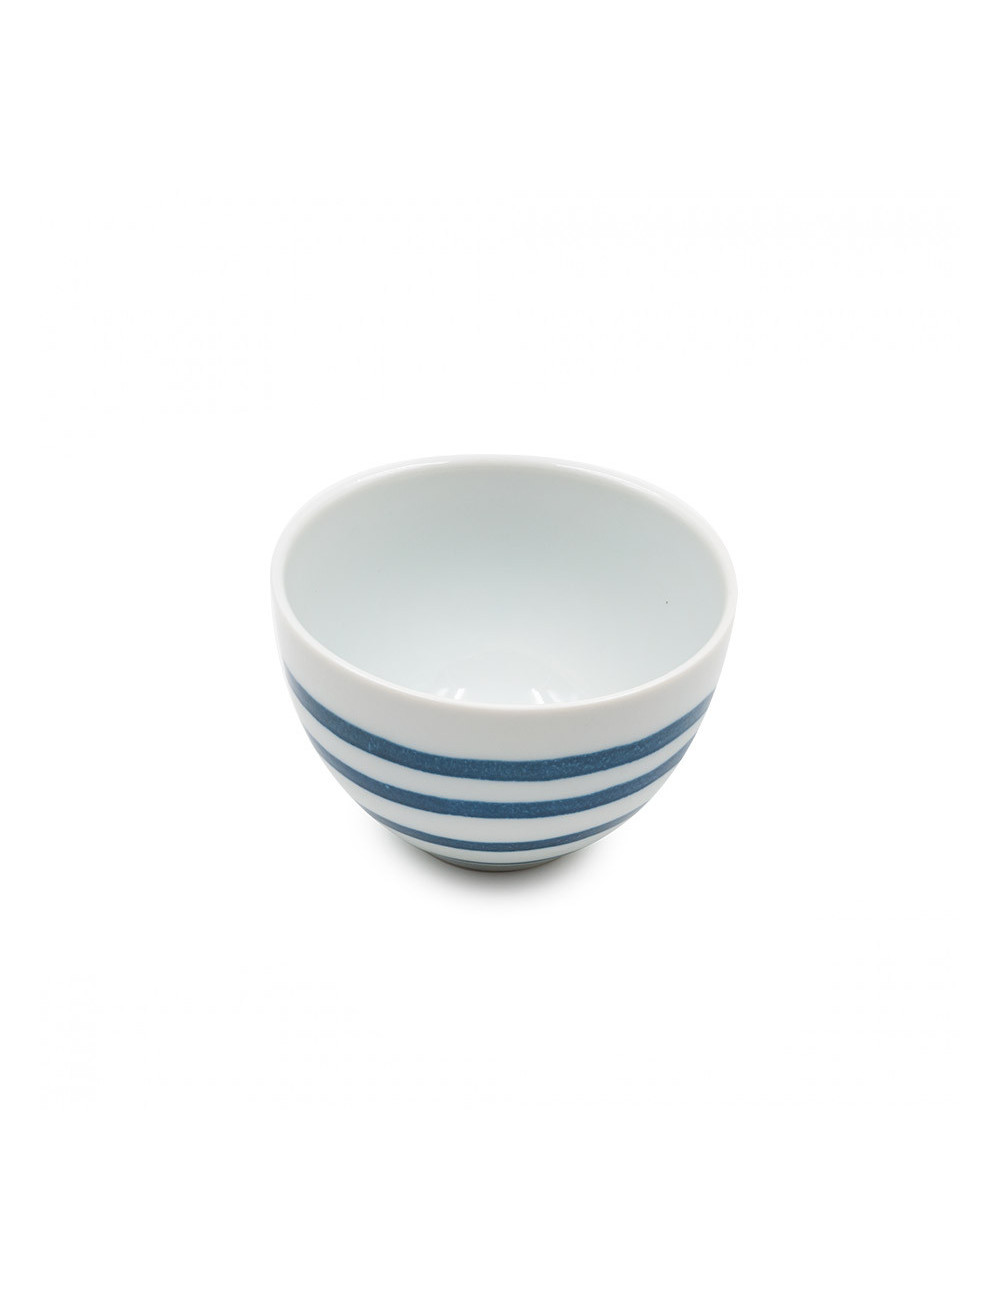 Showa ciotola per il tè stile giapponese in ceramica bianca - La Pianta del Tè shop online